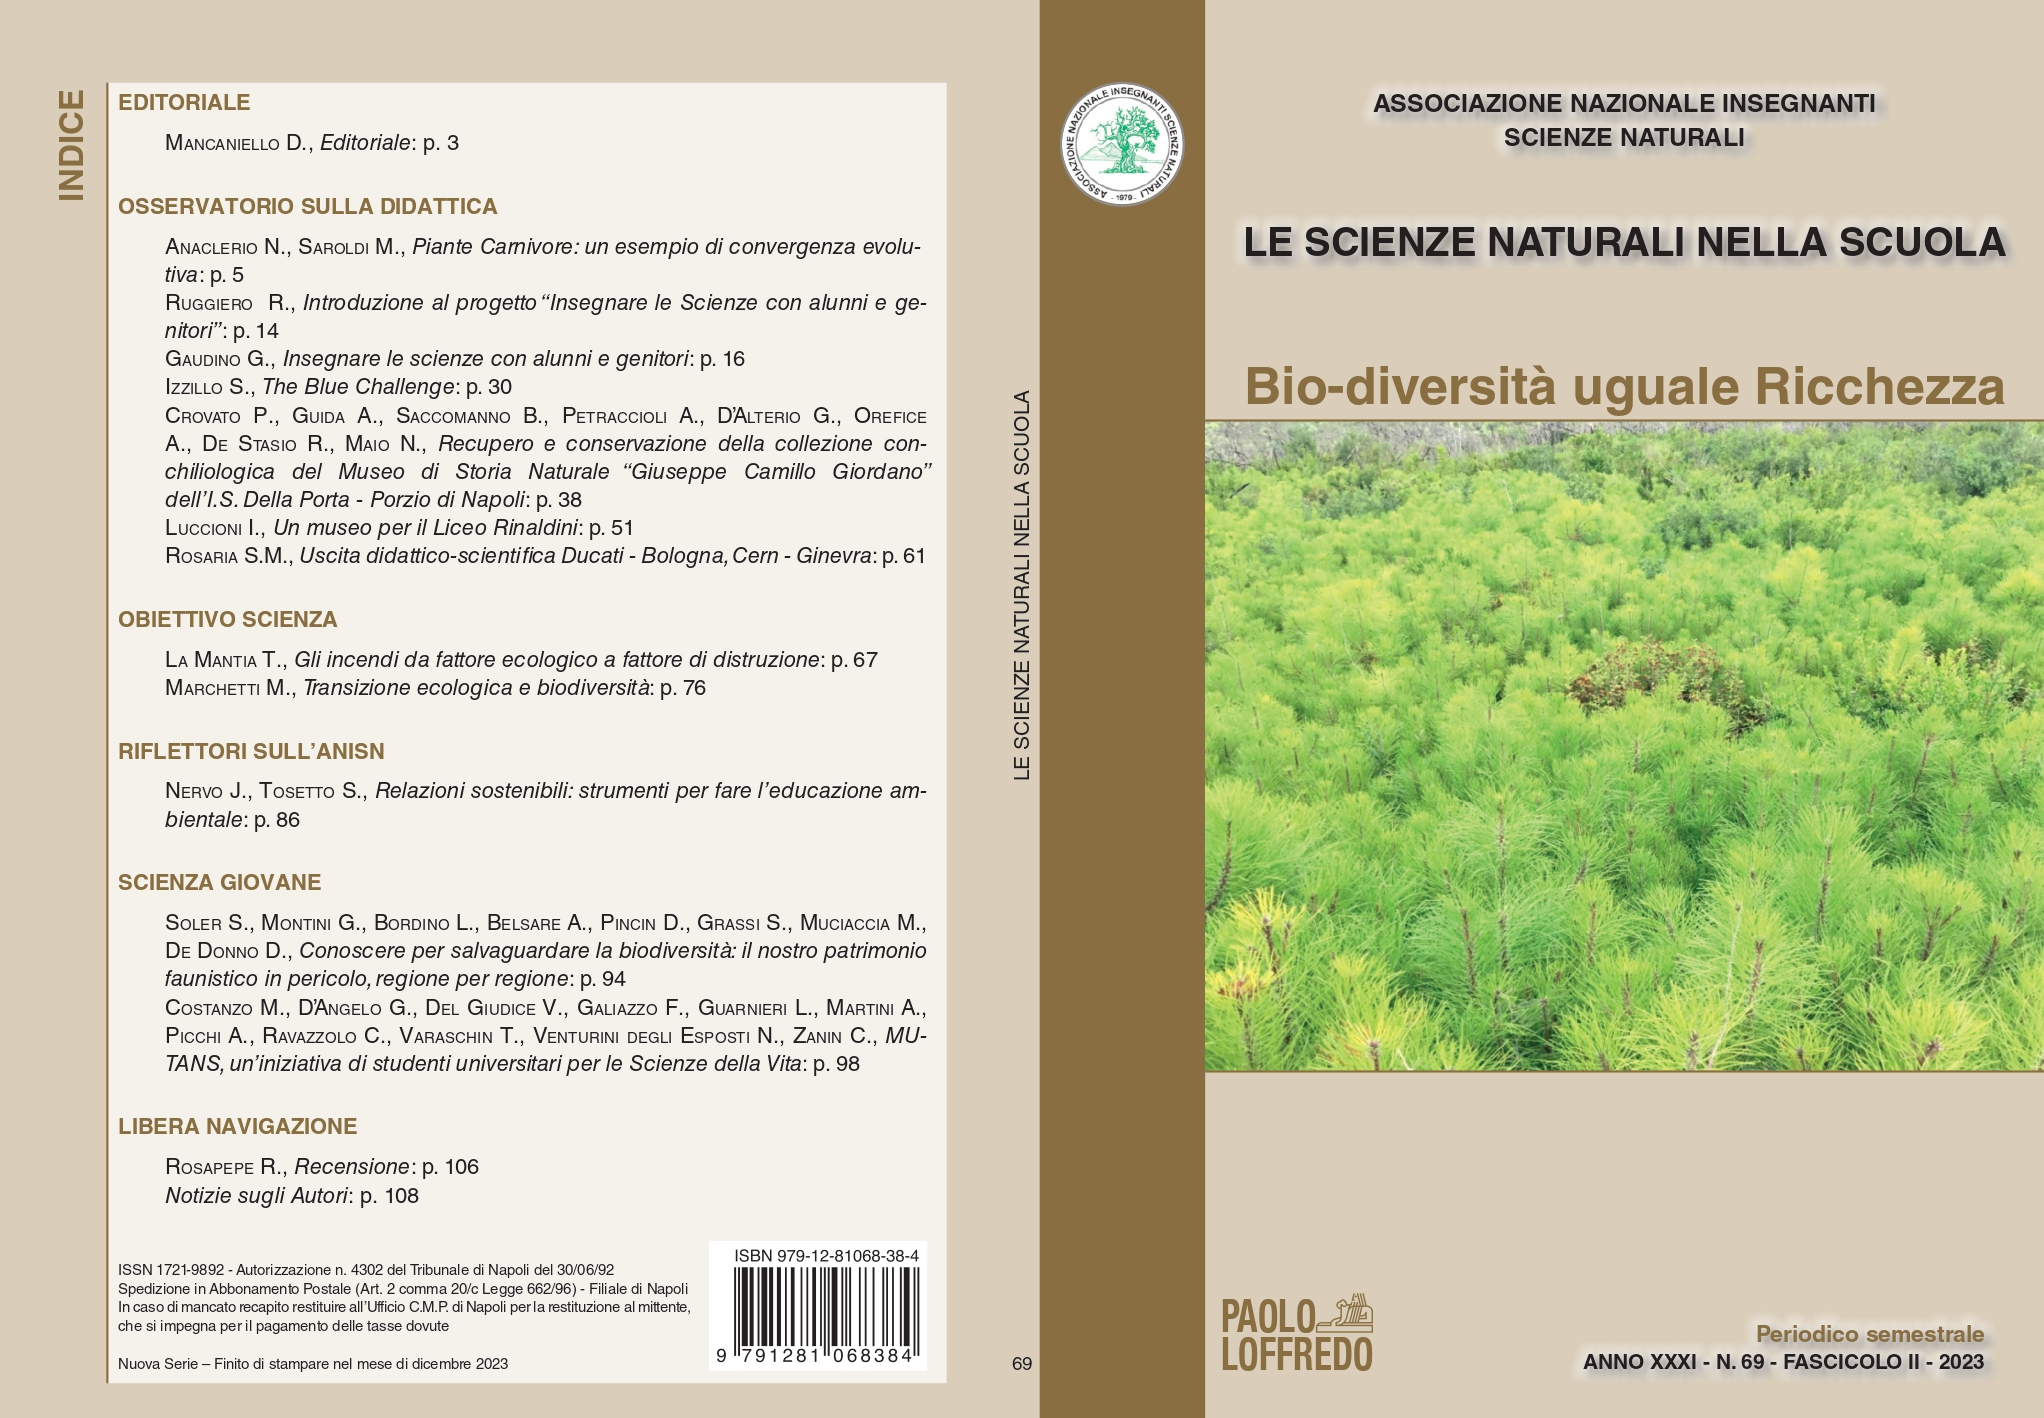 Le Scienze naturali nella scuola - Associazione nazionale insegnanti di  scienze naturali